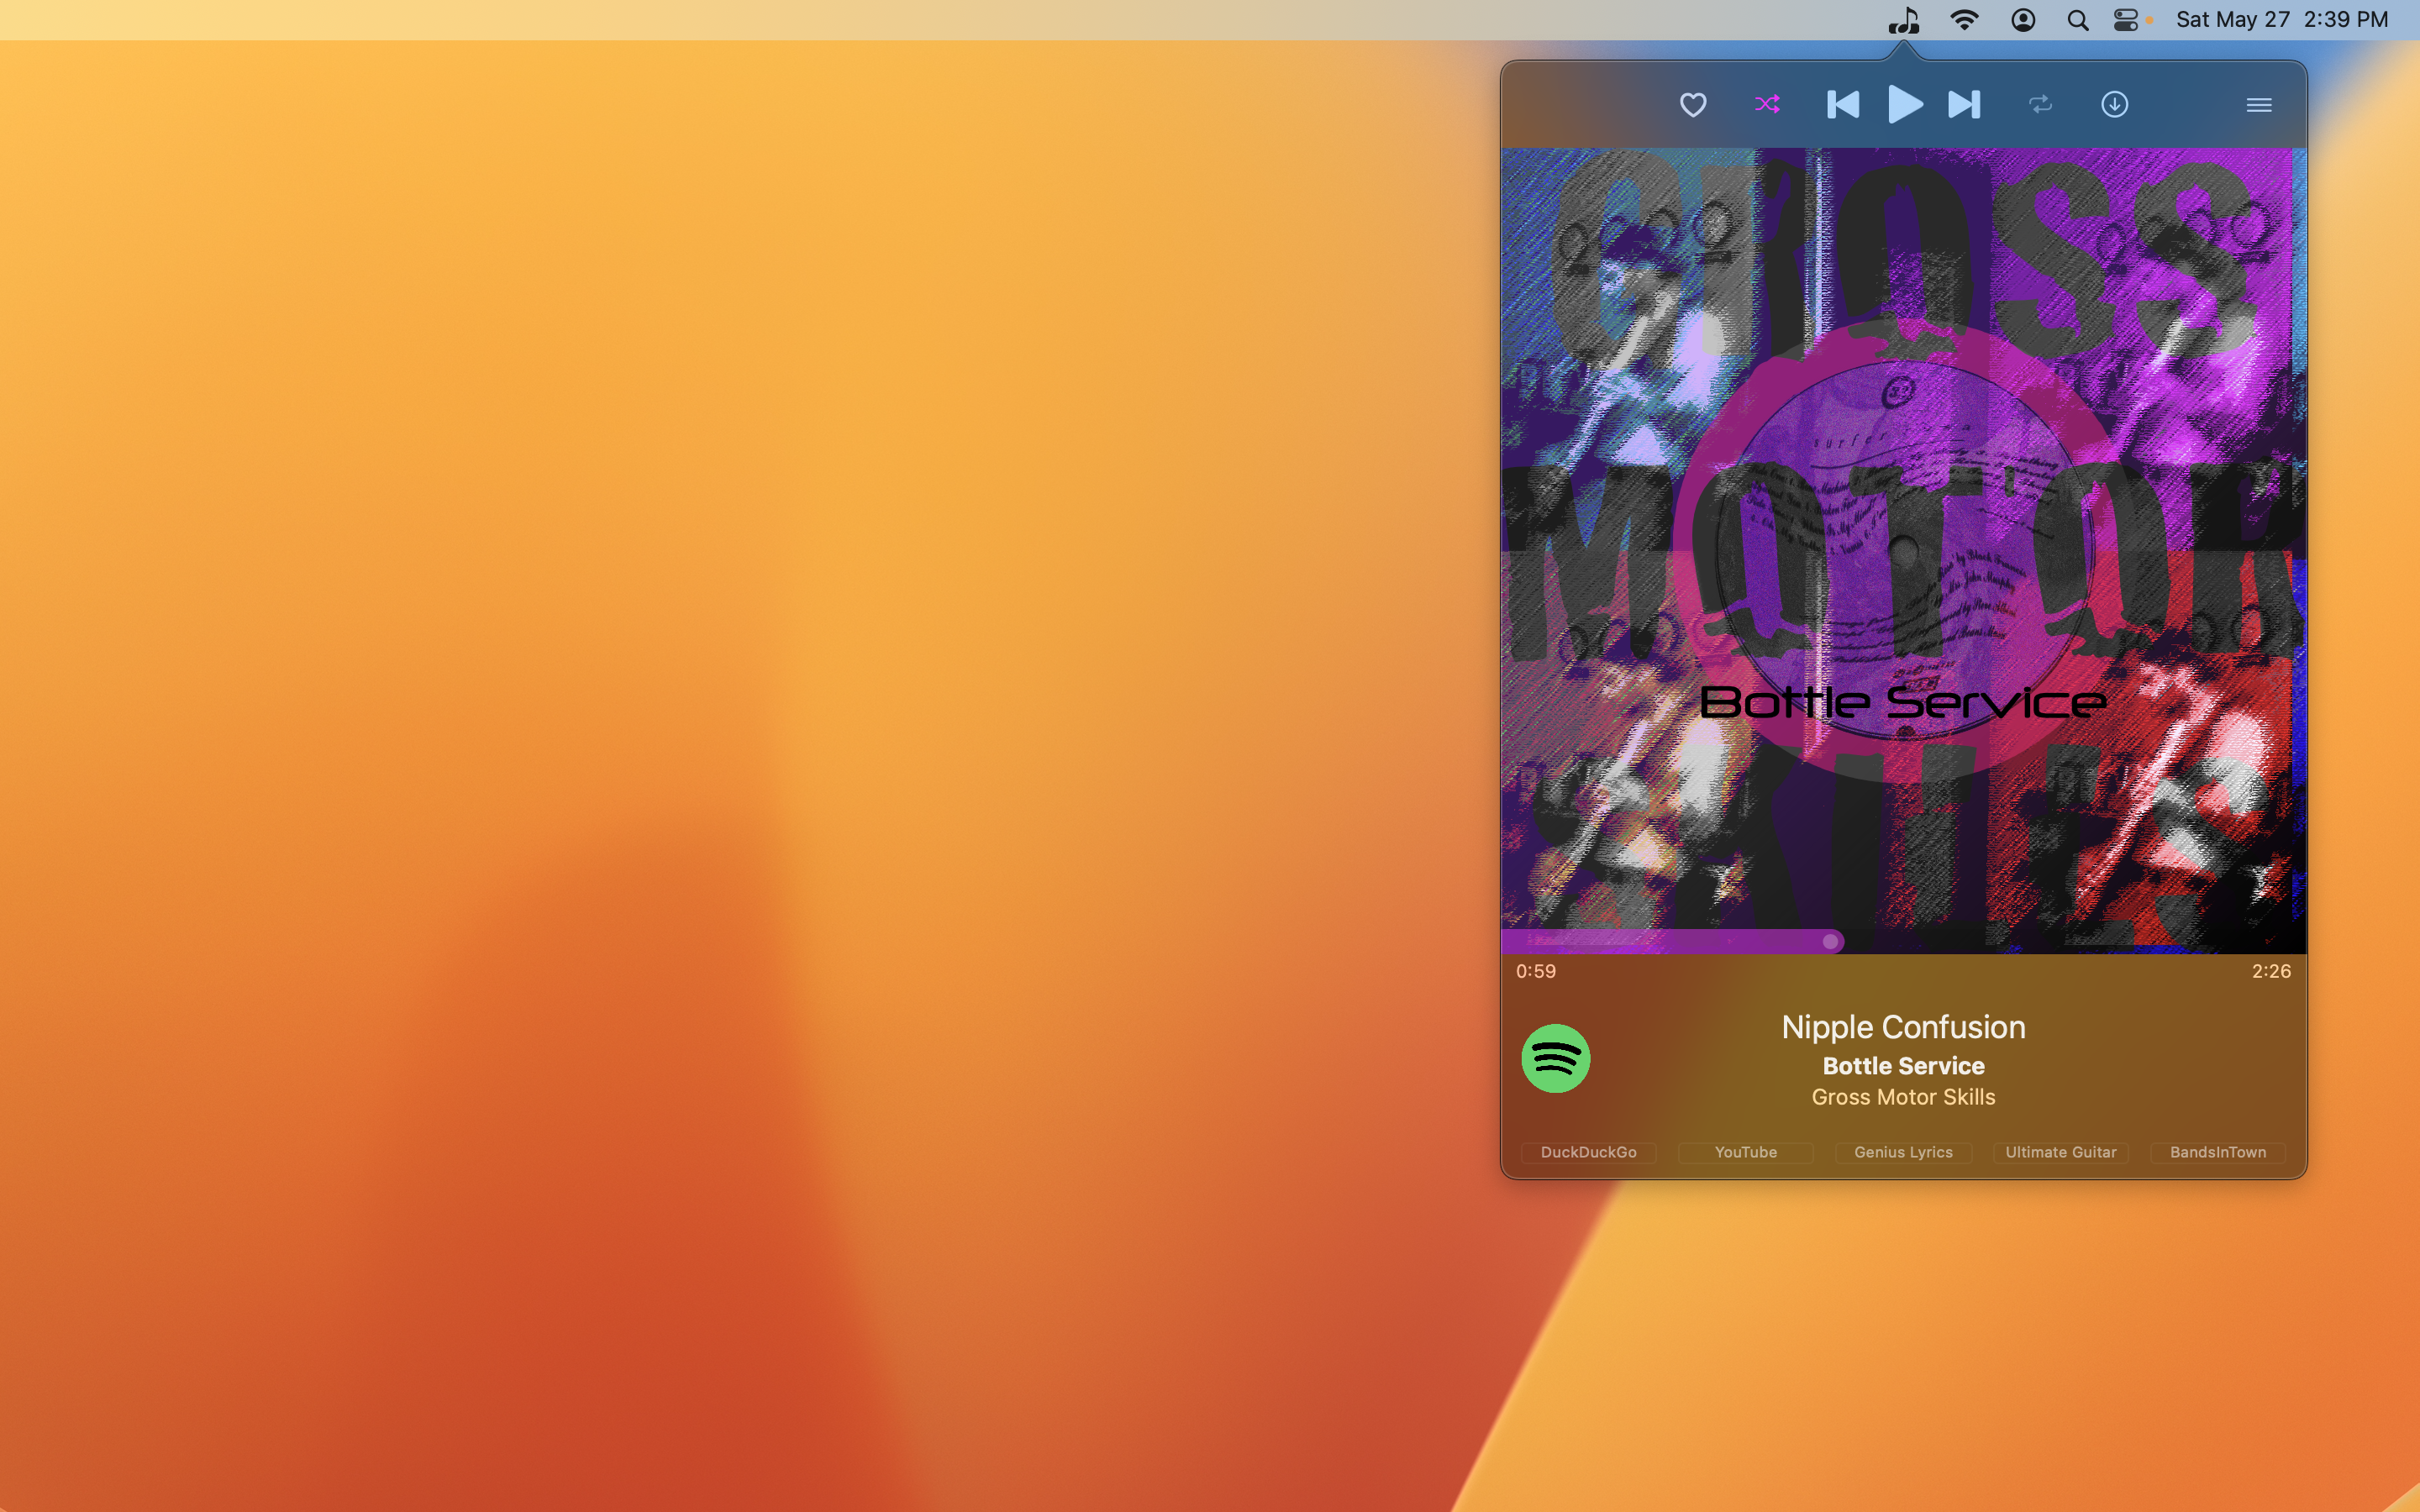 menu bar app large album cover artwork music player controls